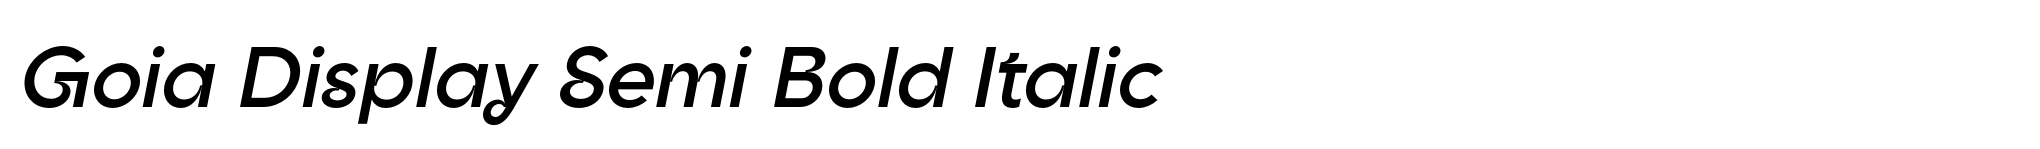 Goia Display Semi Bold Italic image